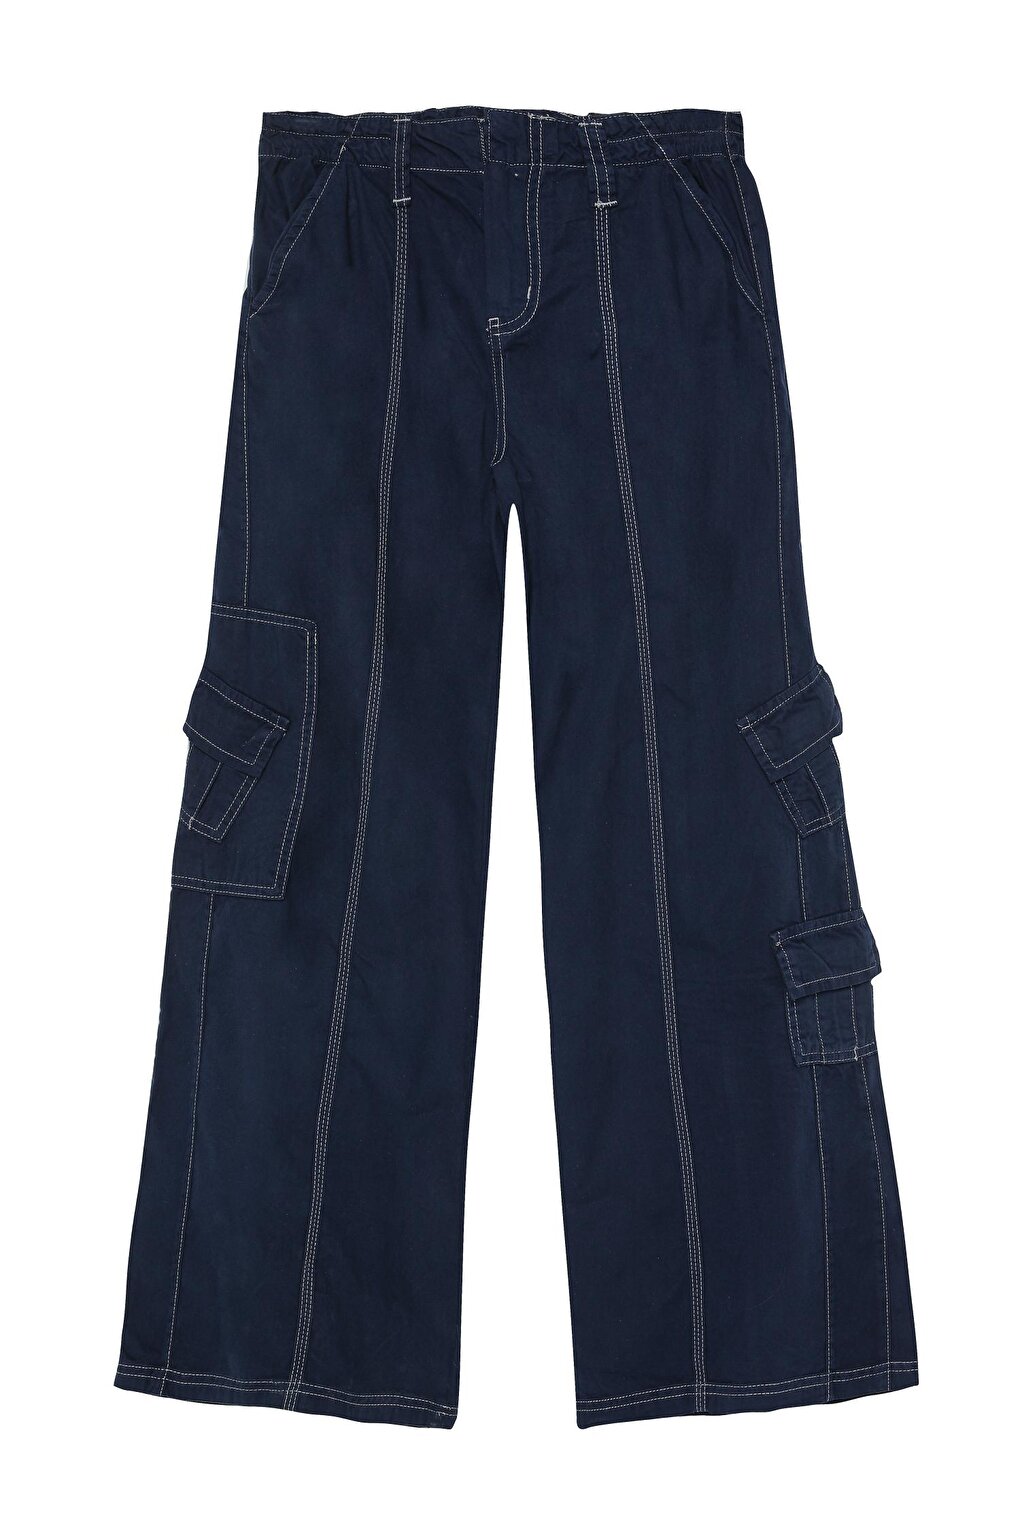 Брюки-карго с мини-карманами, темно-синие QUZU брюки карго с карманами синие button blue